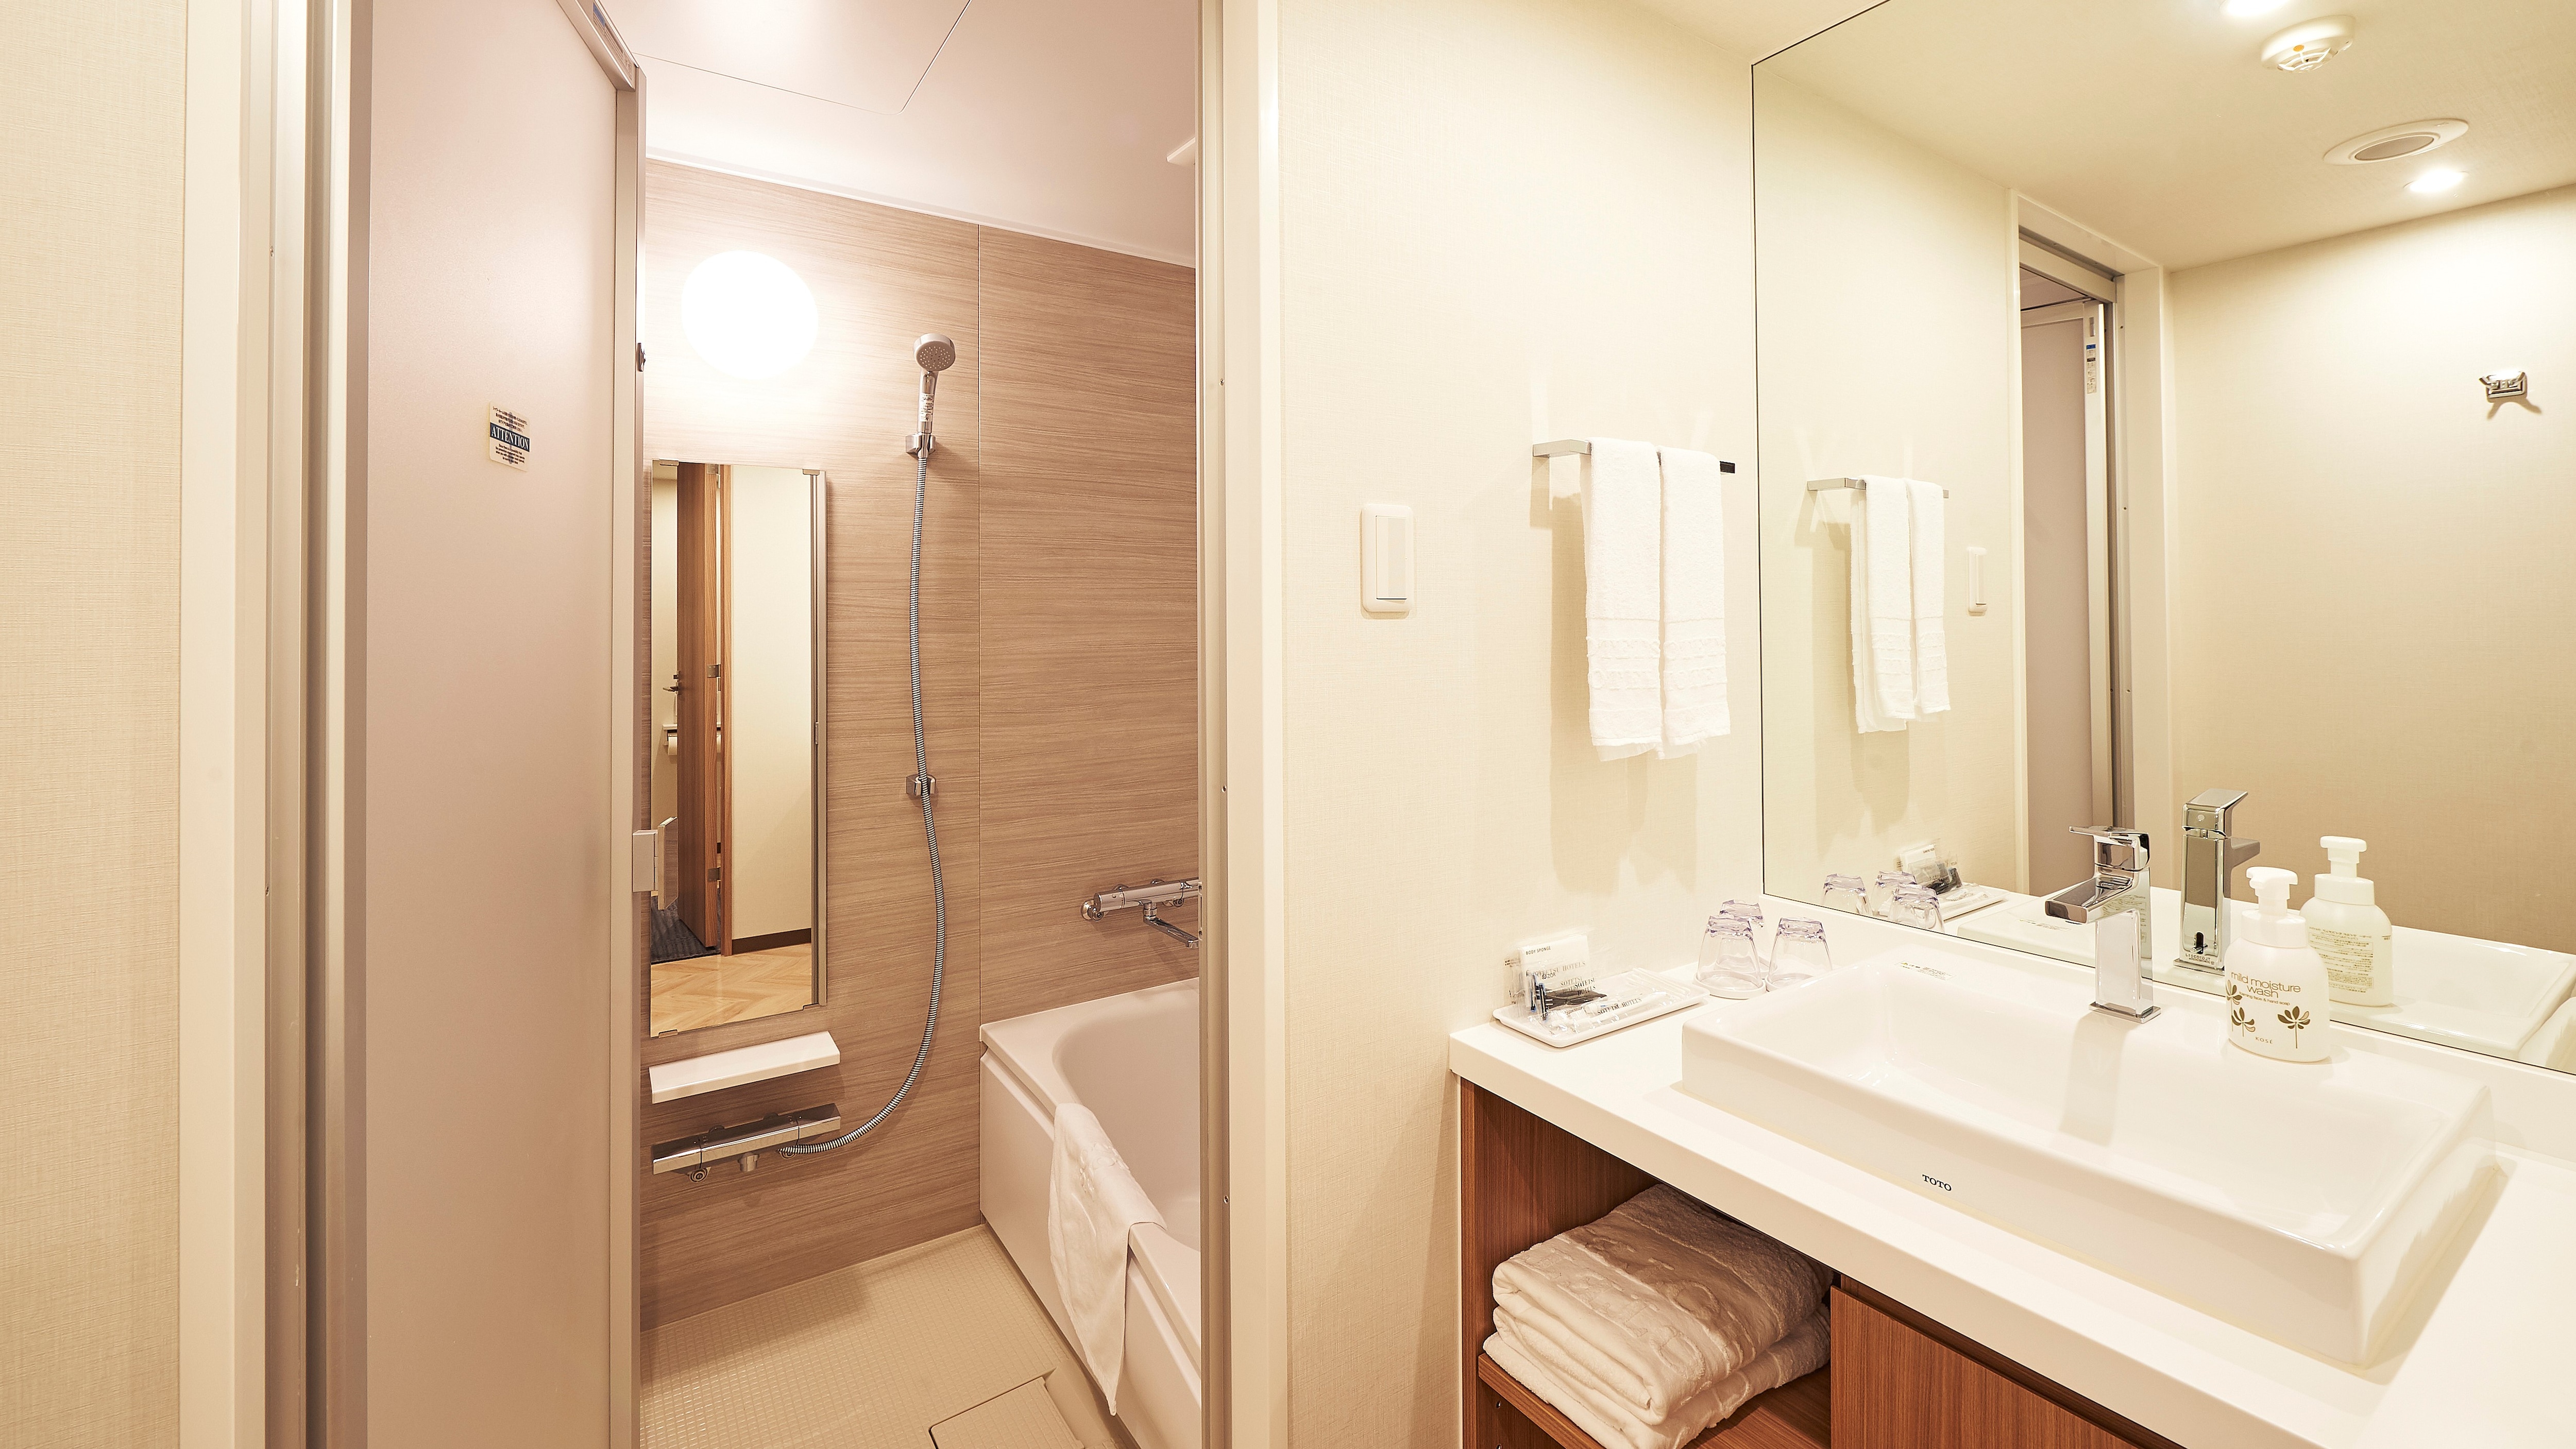 ห้องดีลักซ์เตียงแฝดเป็นห้องแยกต่างหากสำหรับ "ห้องน้ำ" "อ่างล้างหน้า" และ "ห้องสุขา"